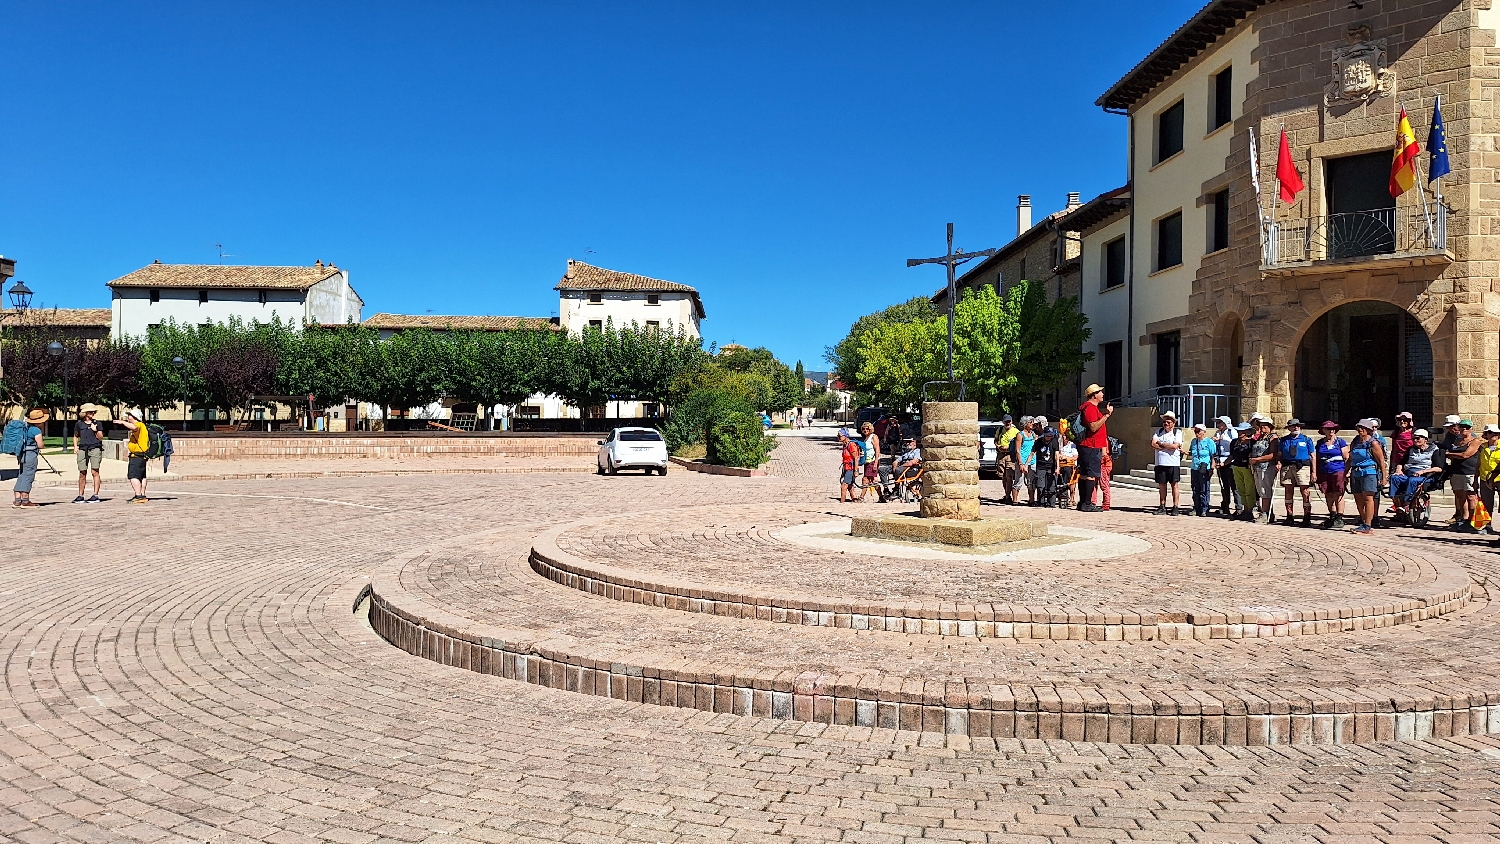 El Camino, Aragon út, Francia út, Óbanosban zarándok-turisták állnak a templom előtt